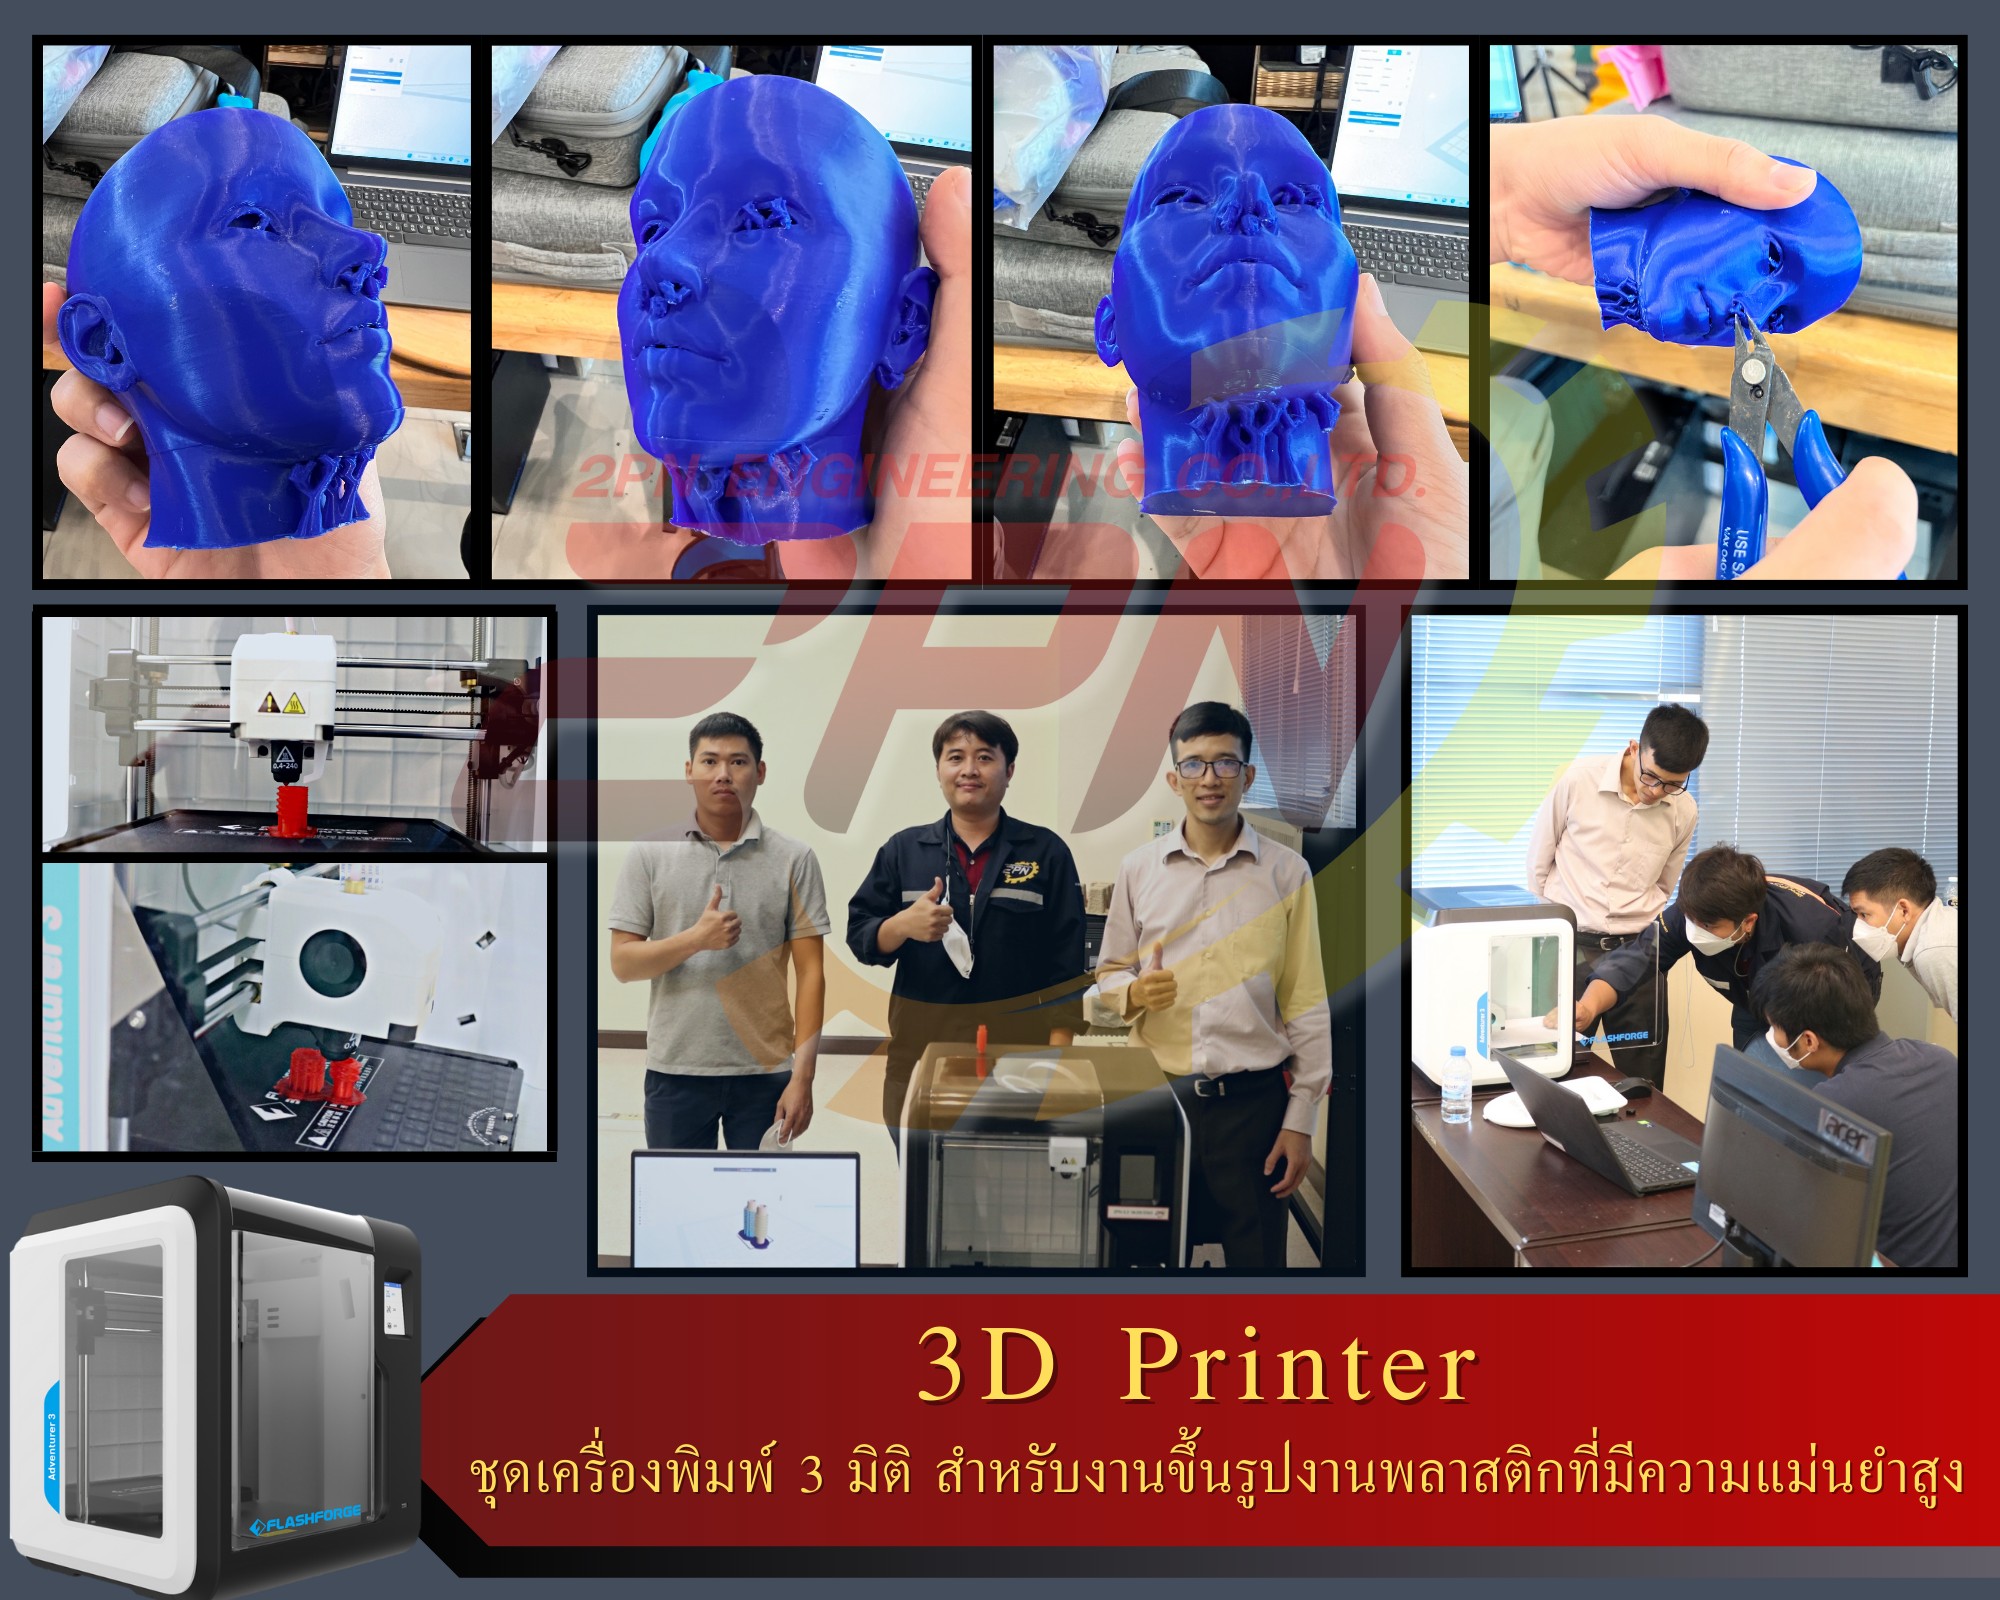 3D Printer (เครื่องพิมพ์ 3 มิติ)